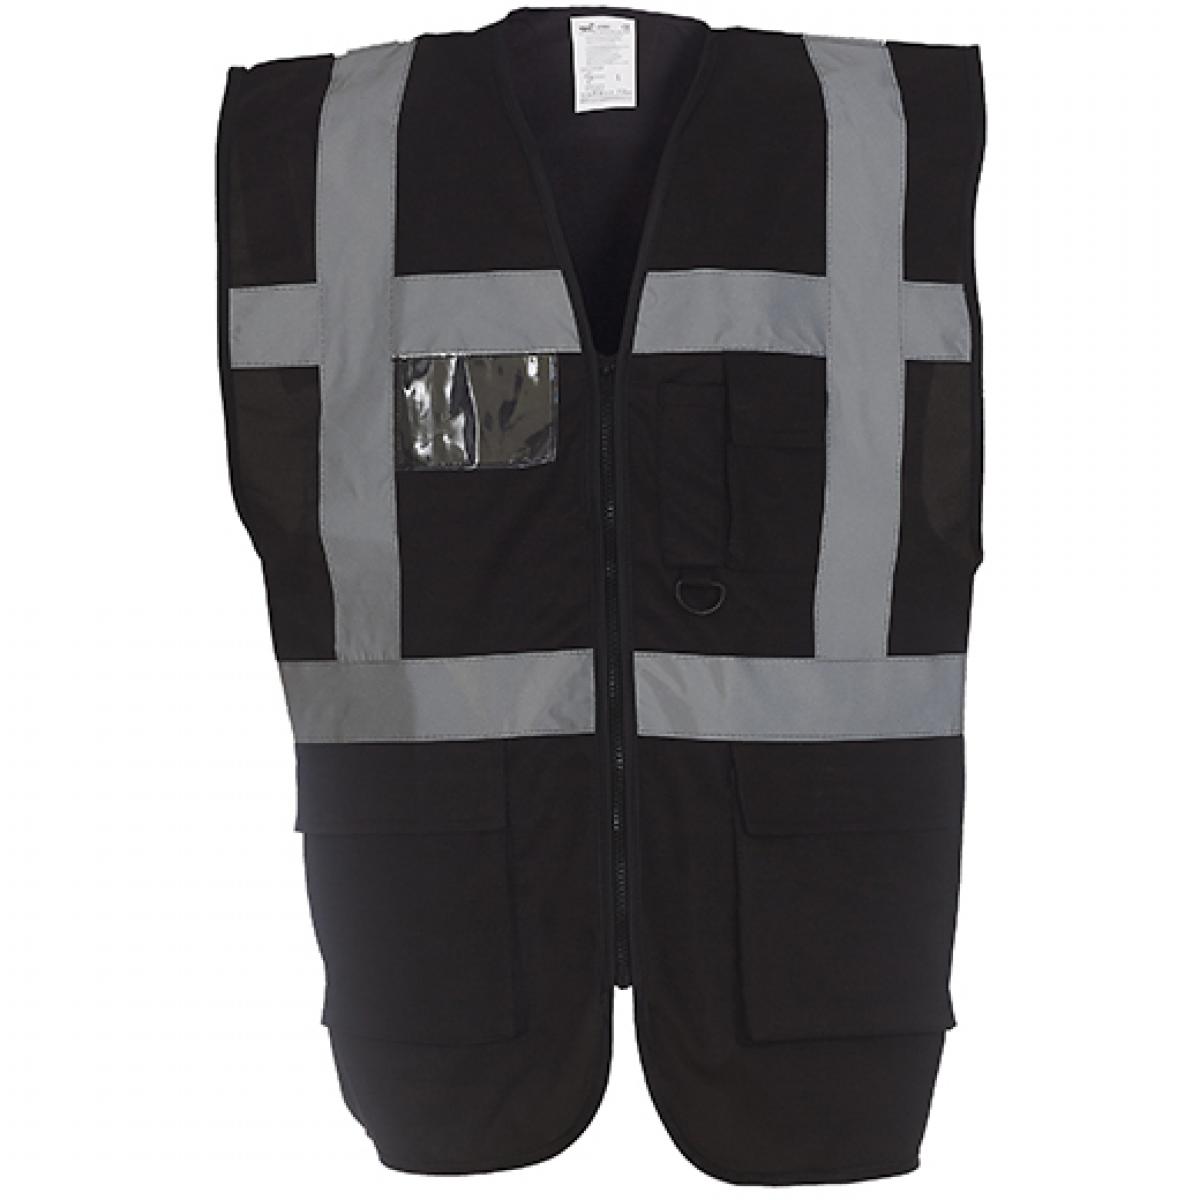 Hersteller: YOKO Herstellernummer: HVW801 Artikelbezeichnung: Herren Multi-Functional Executive Waistcoat Farbe: Black